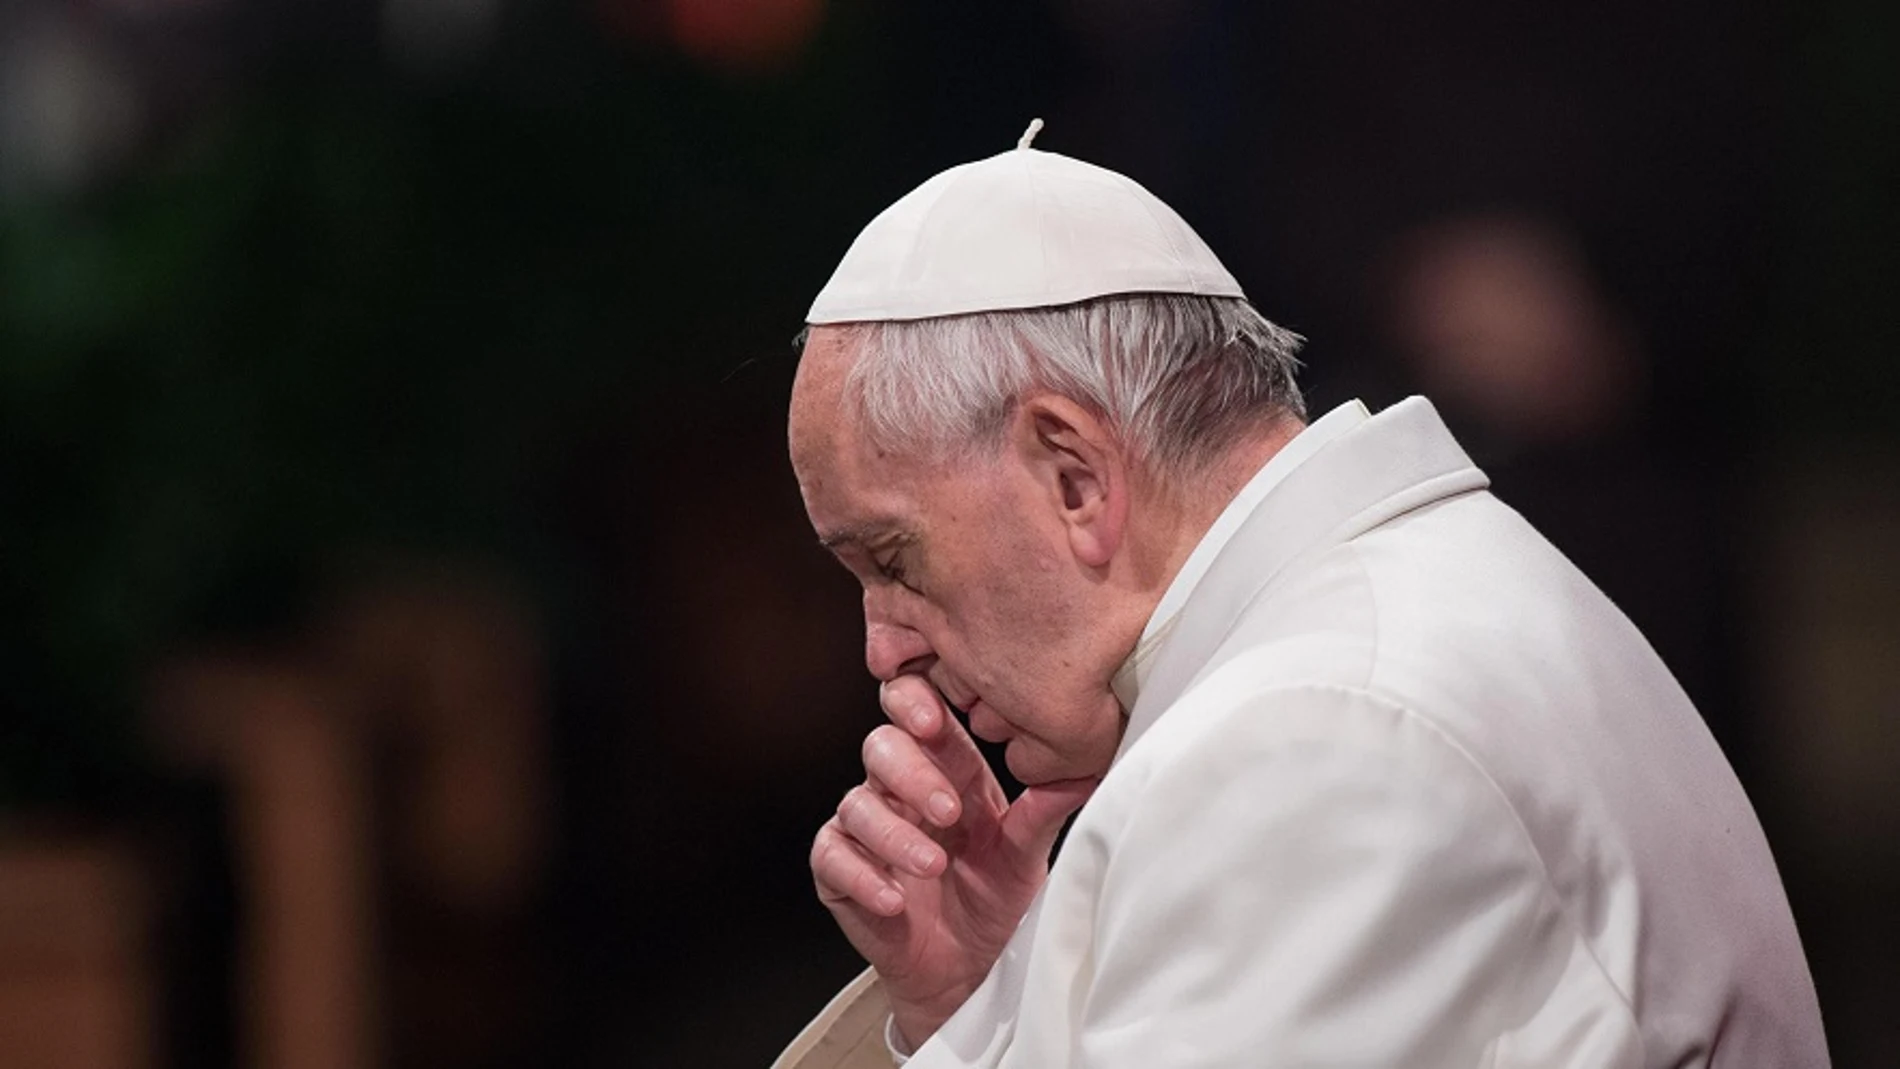 El Papa clama "vergüenza" en el Via Crucis por la sangre inocente que es derramada de mujeres, niños y migrantes 